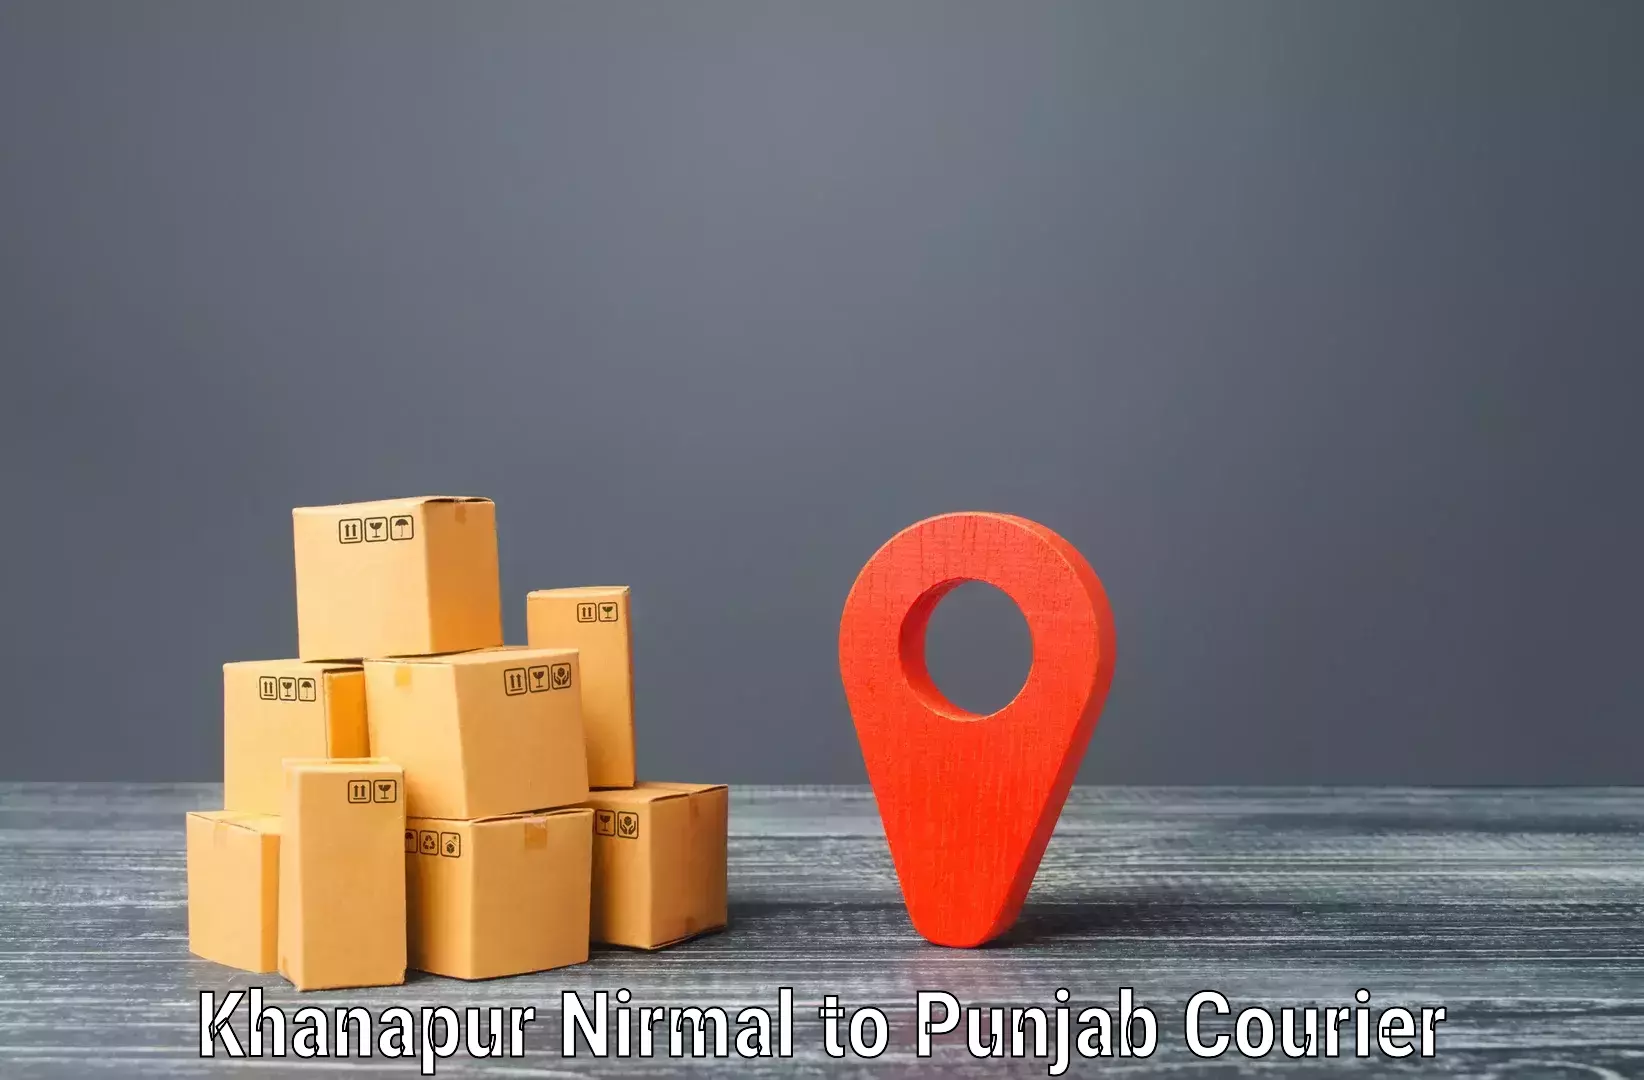 Efficient parcel service Khanapur Nirmal to Dhuri